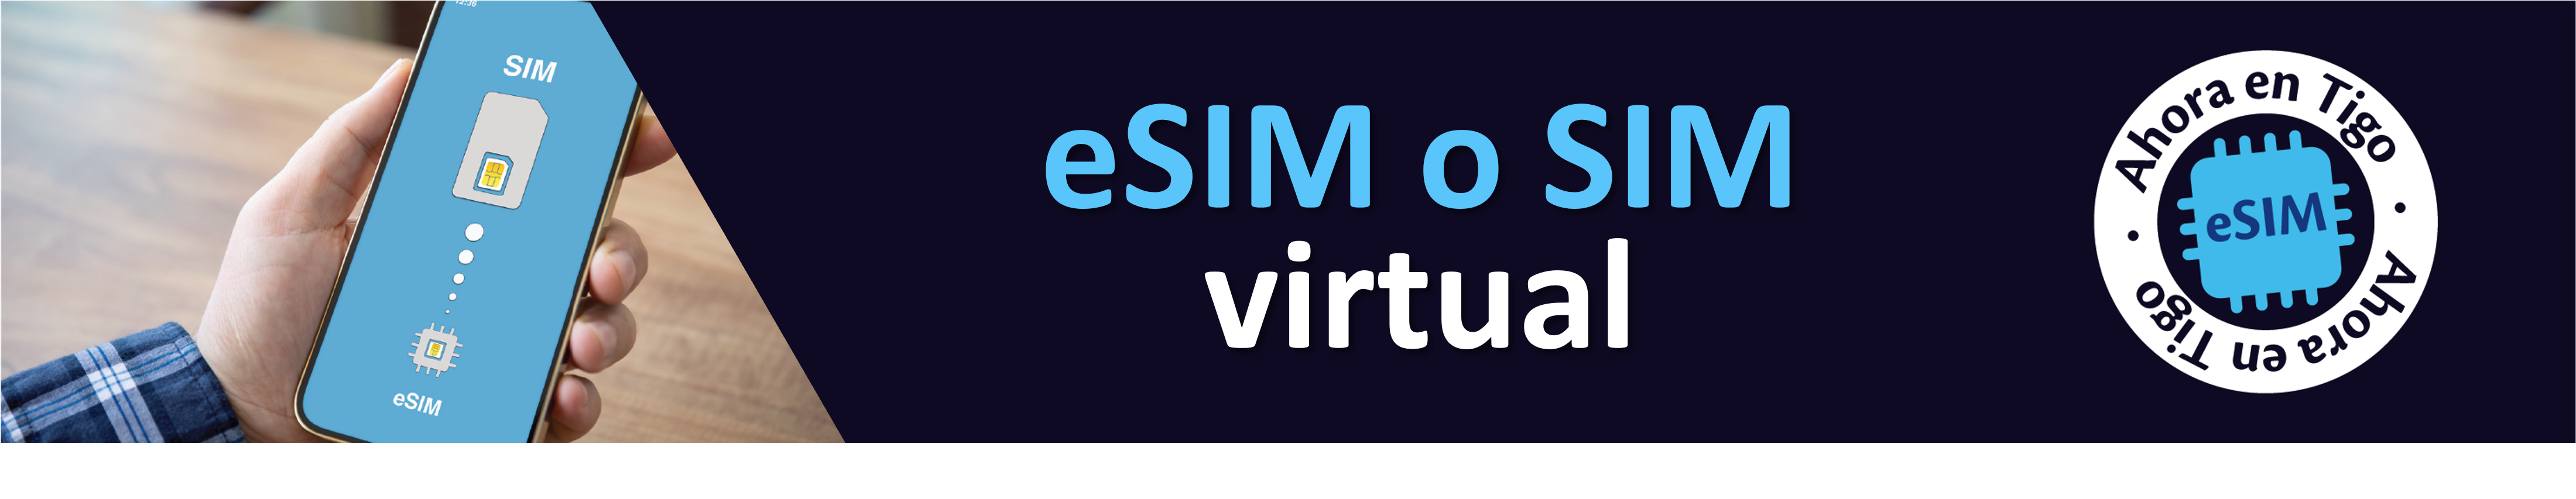 esim-sim-virtual.png